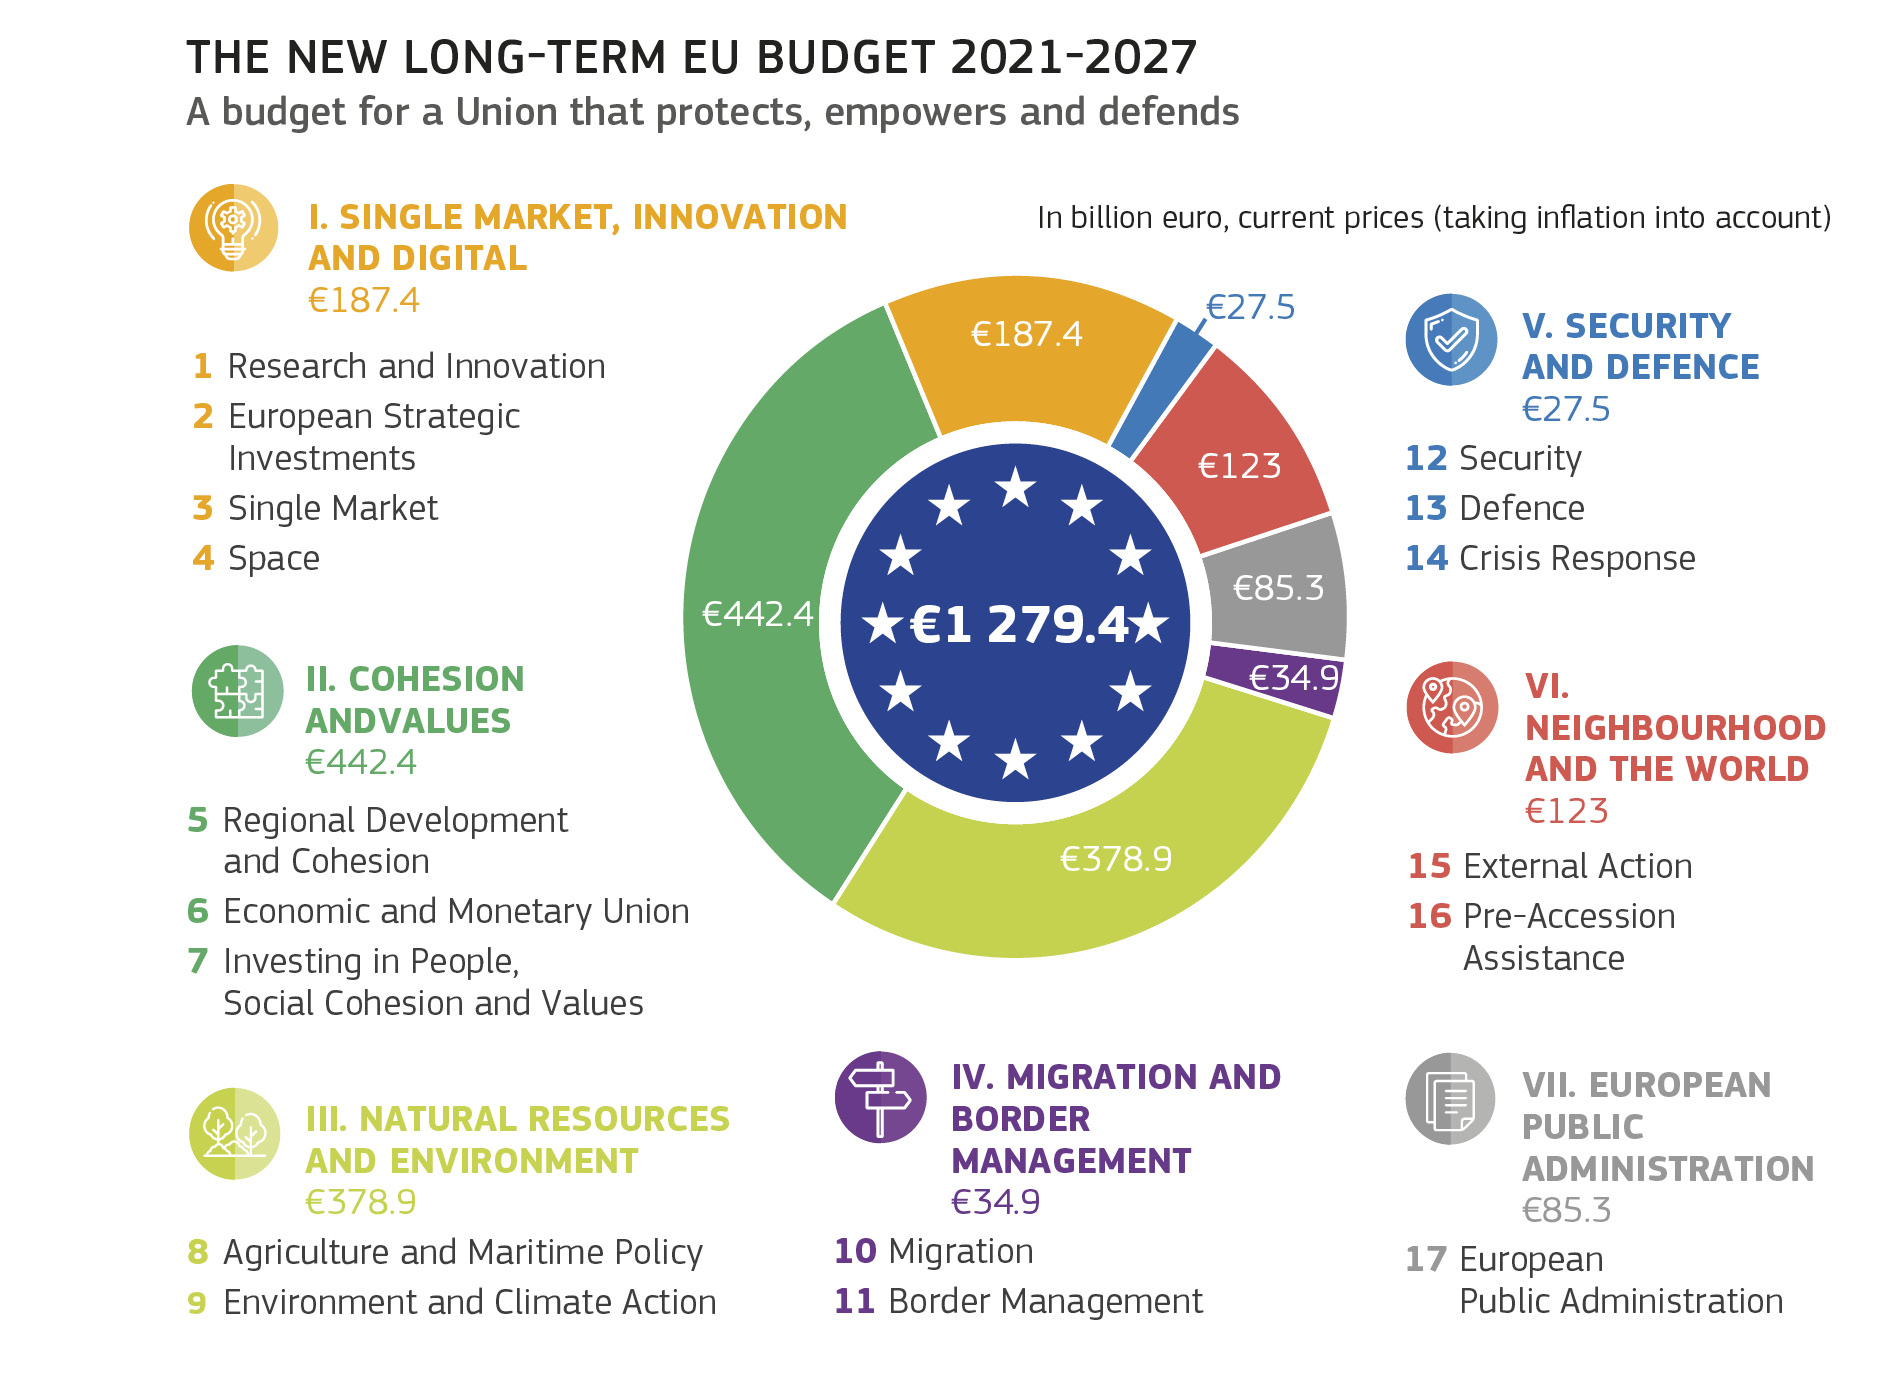 THE NEW LONG-TERM EU BUDGET 2021-2027 